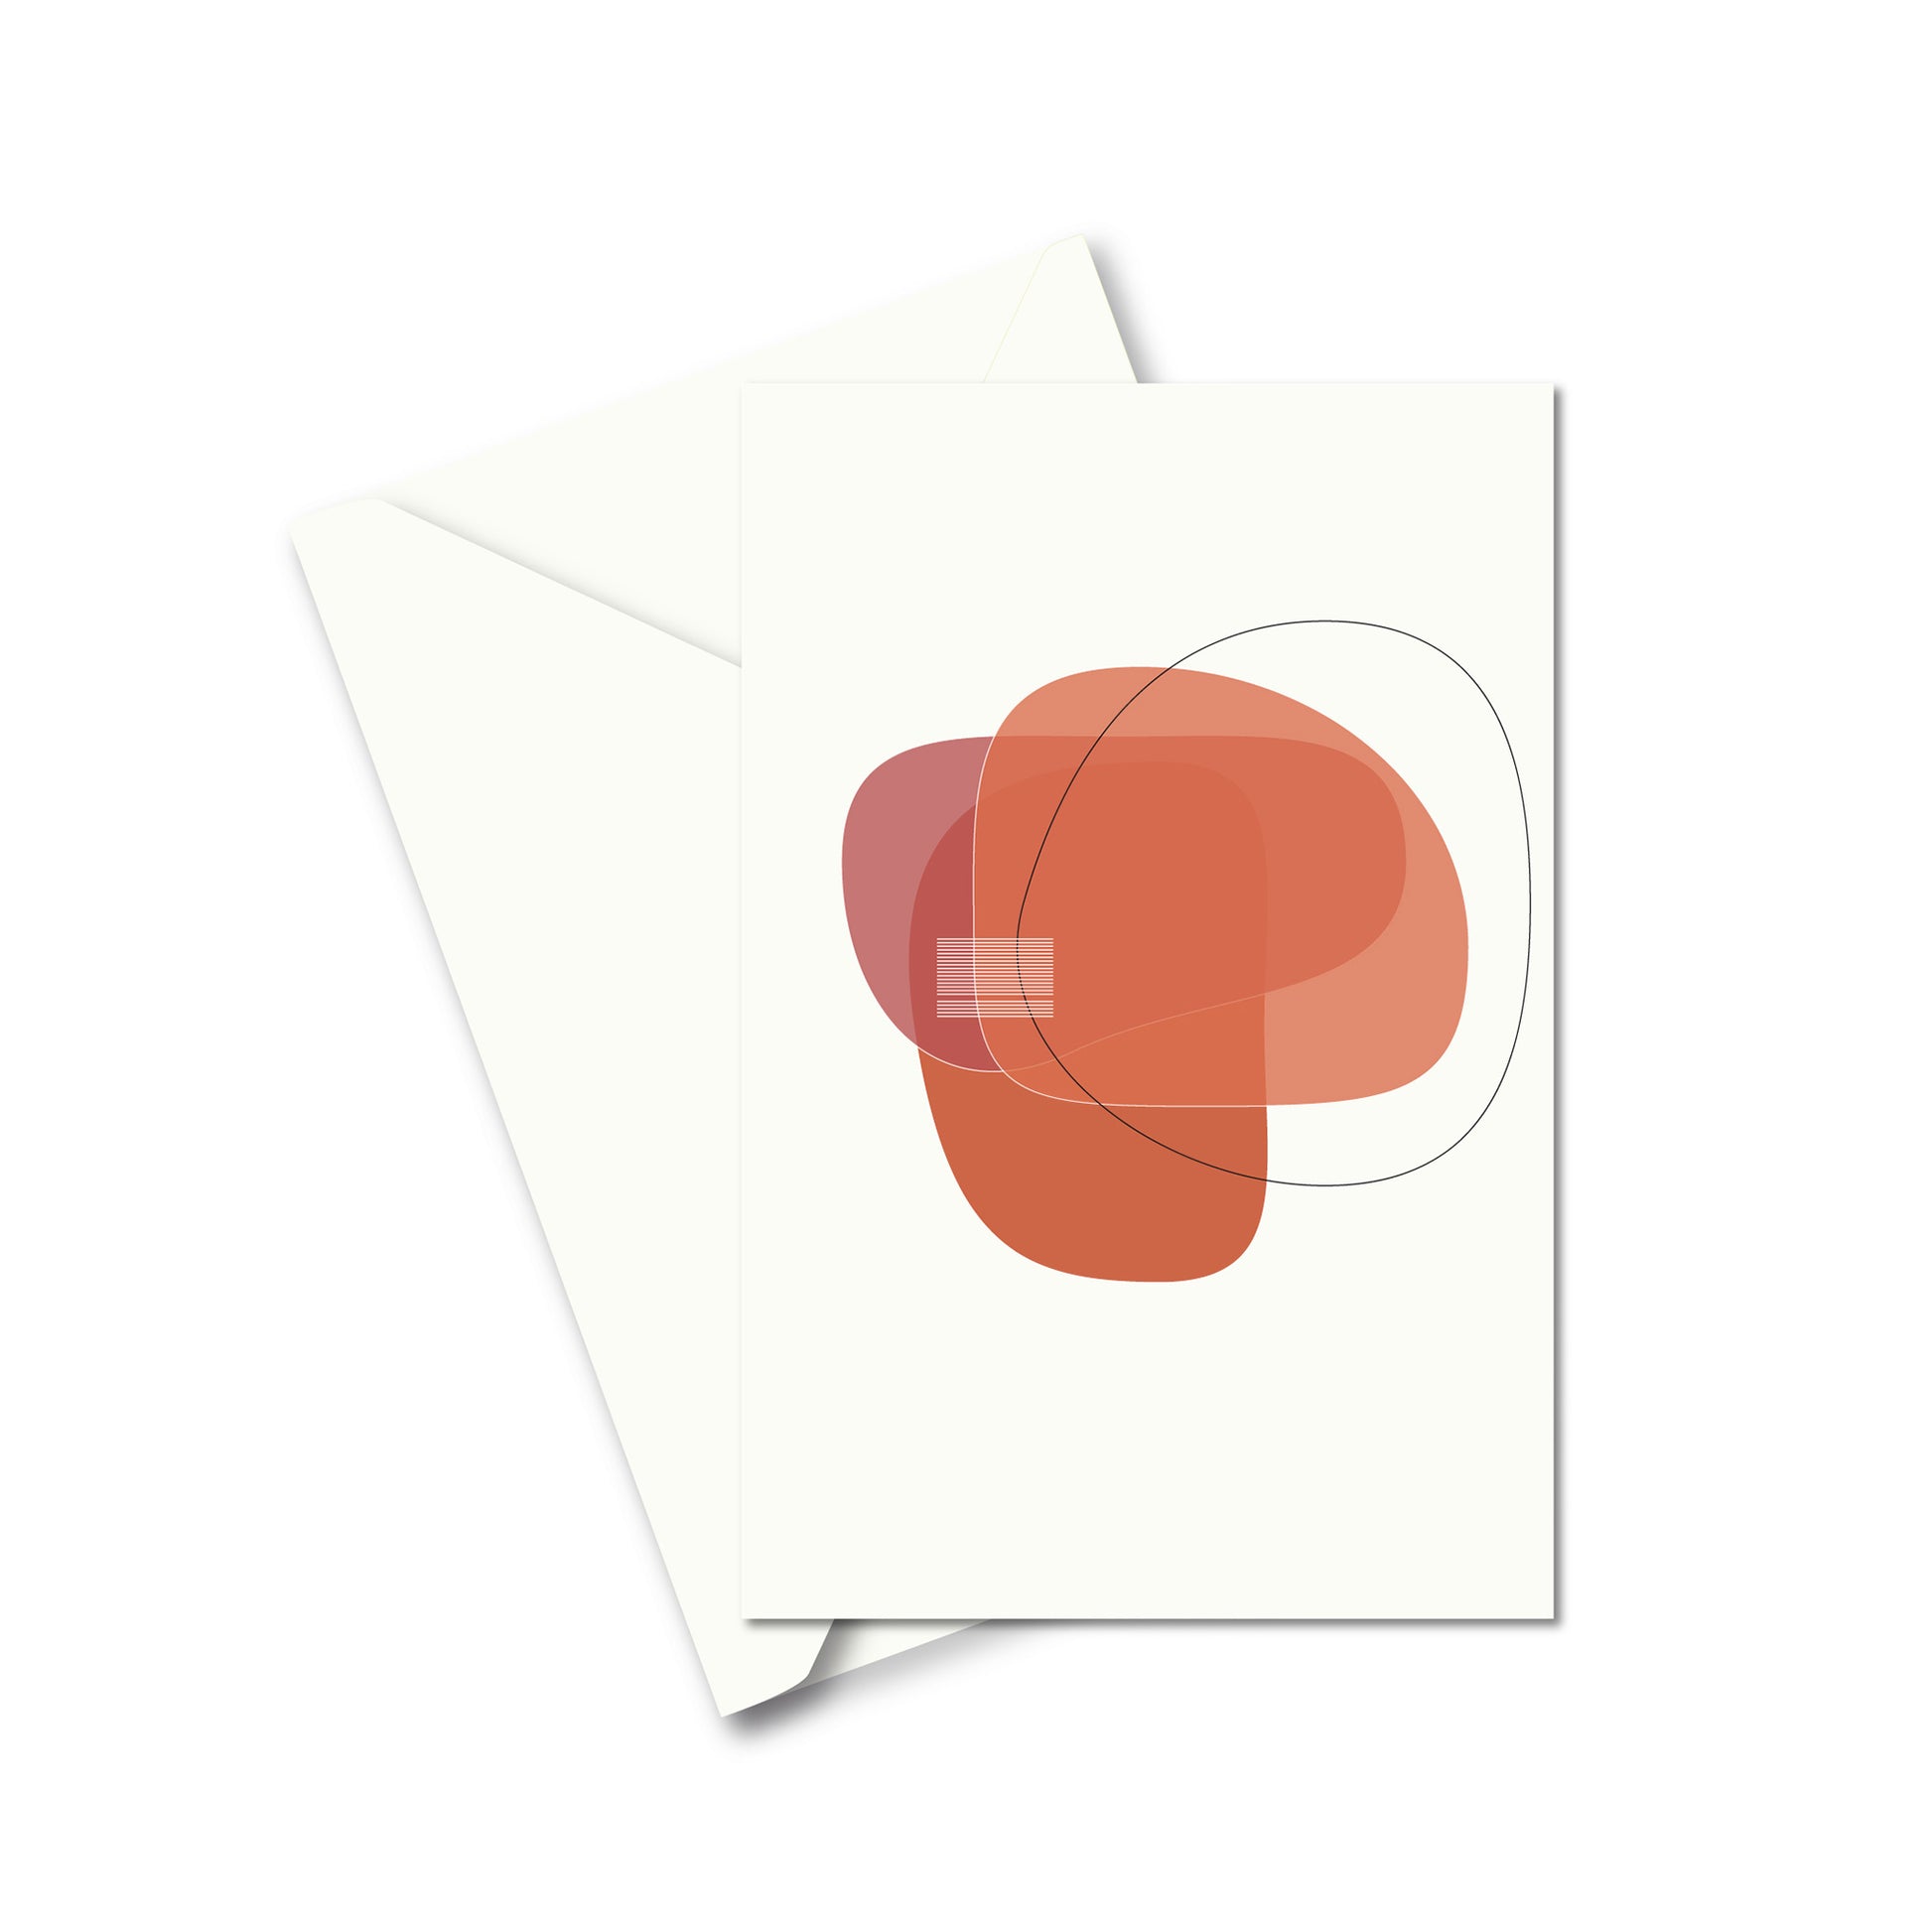 Productafbeelding, wenskaart "wensen in vorm 3", de voorzijde met een envelop